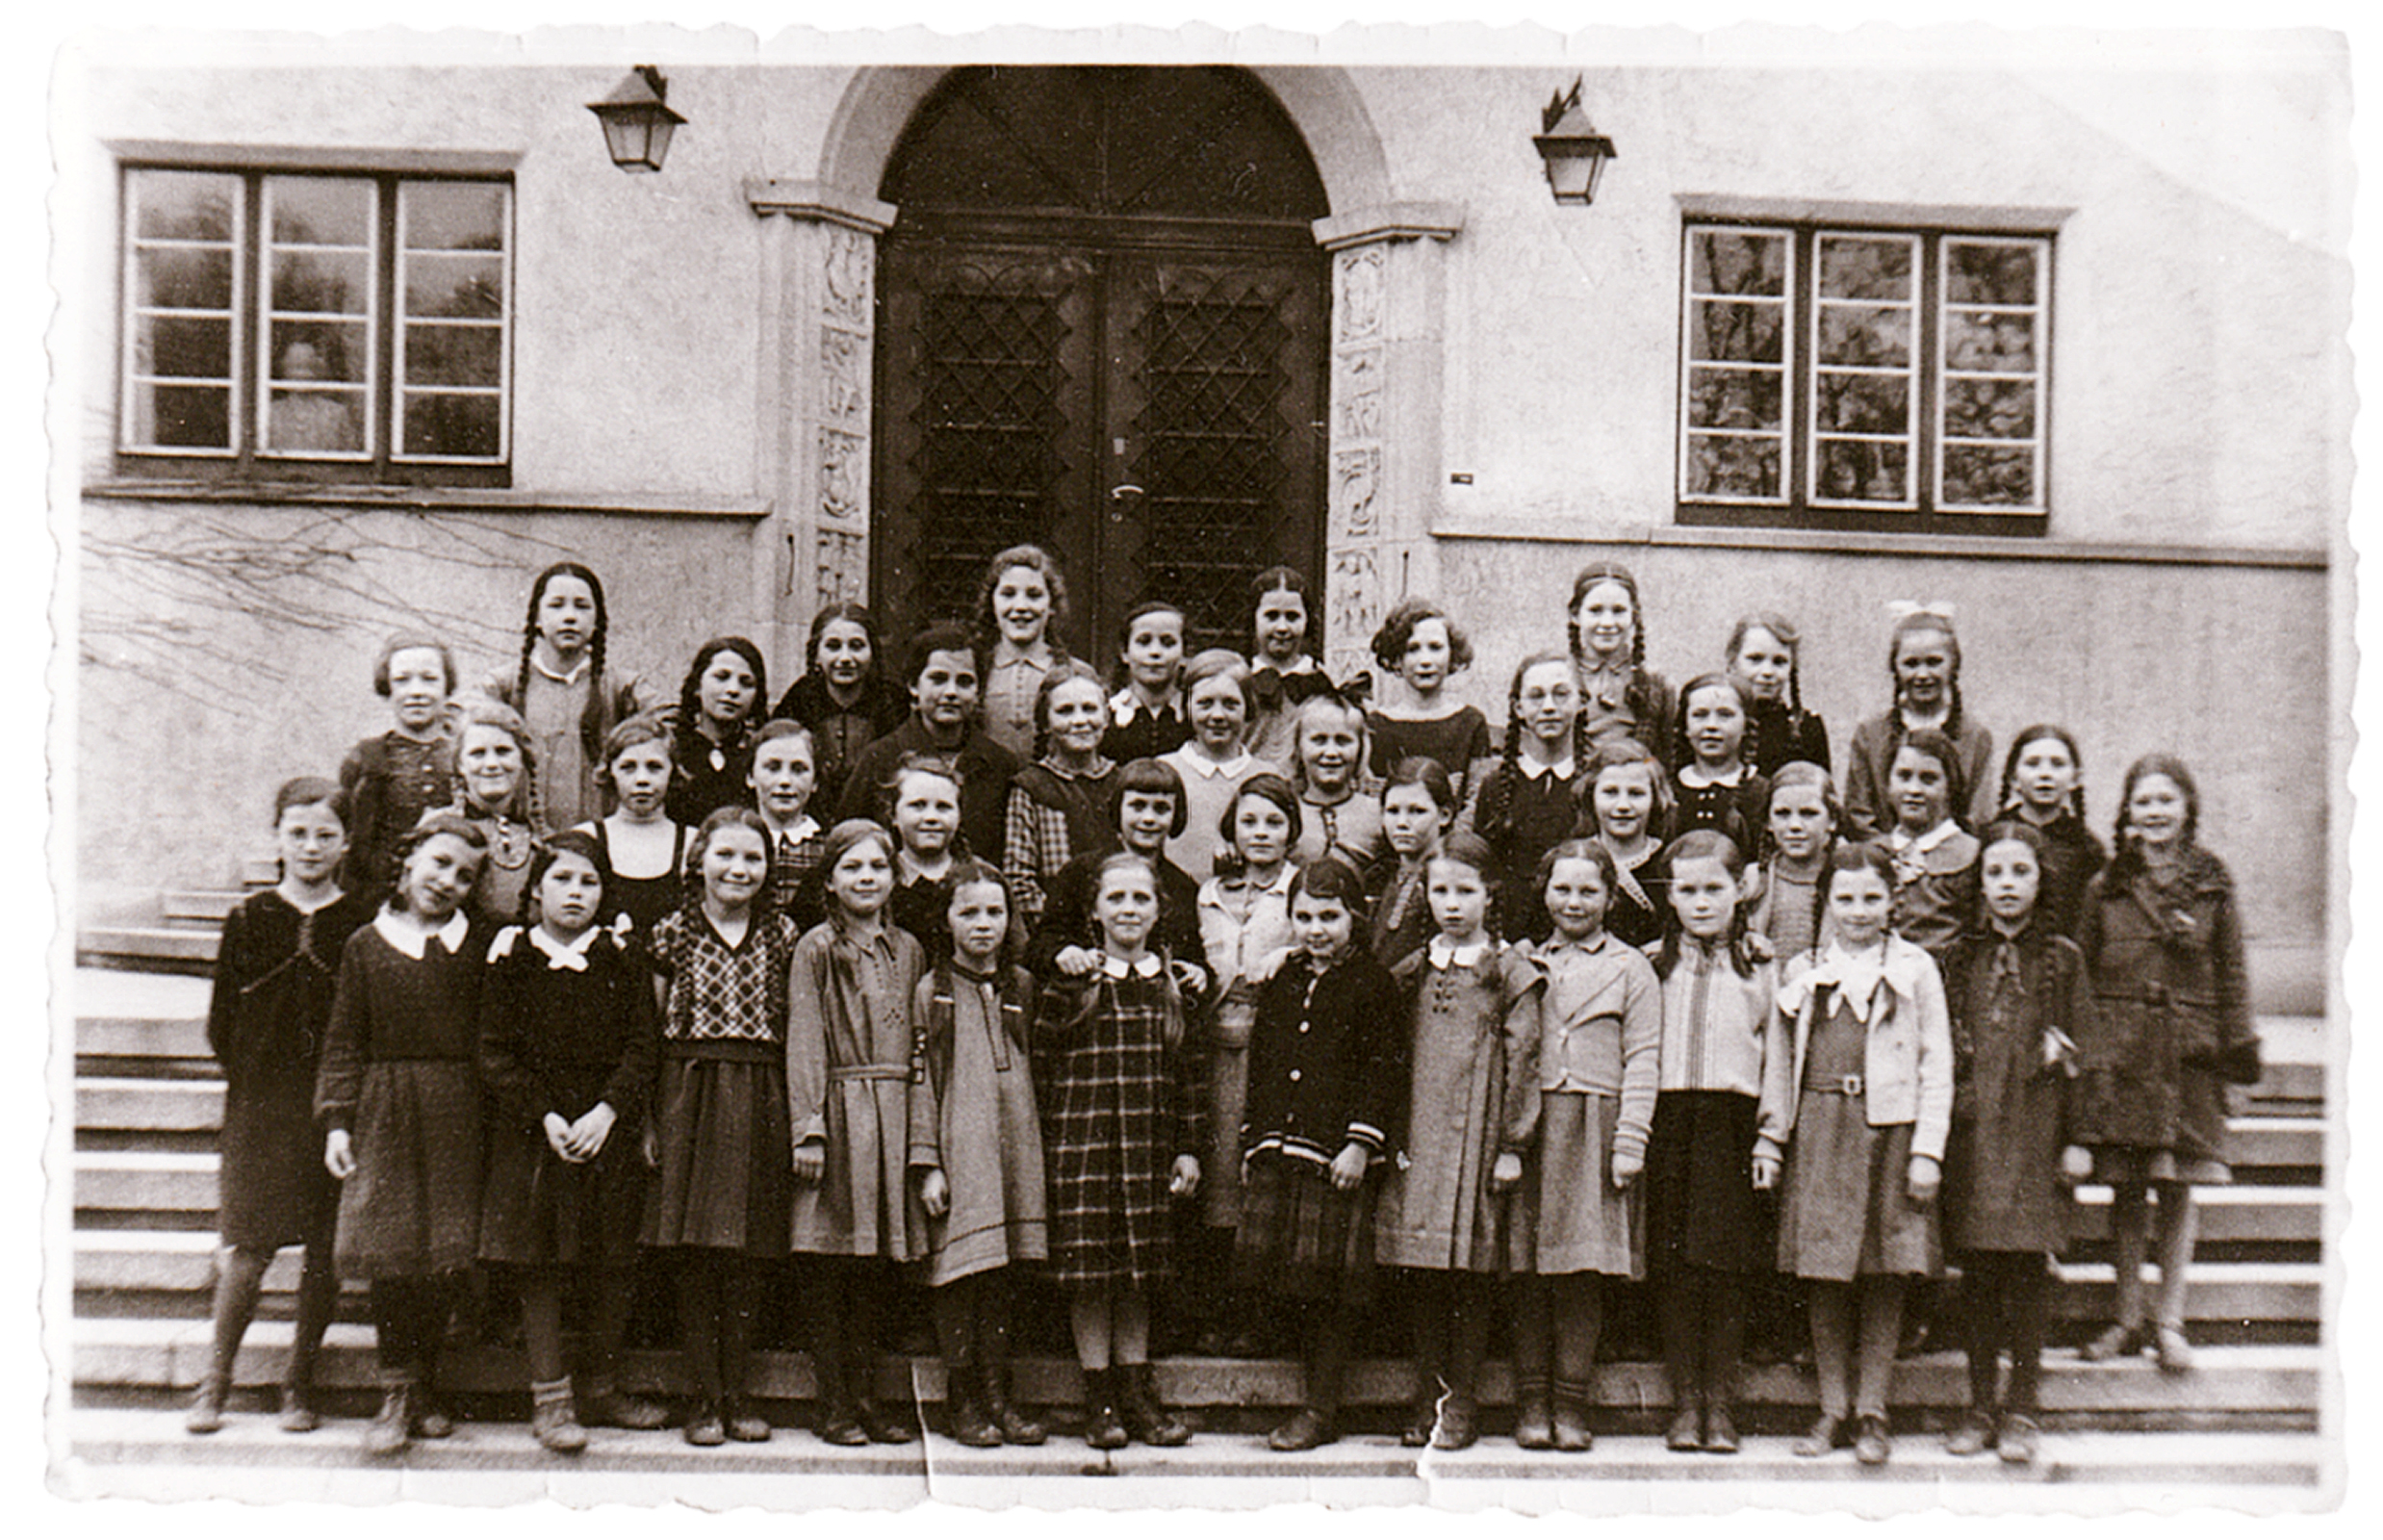 Klassenfoto vor dem Haupteingang der Mädchenrealschule 1935. In der letzten Reihe, unmittelbar rechts von der Eingangstür, steht Doris Bernheim.